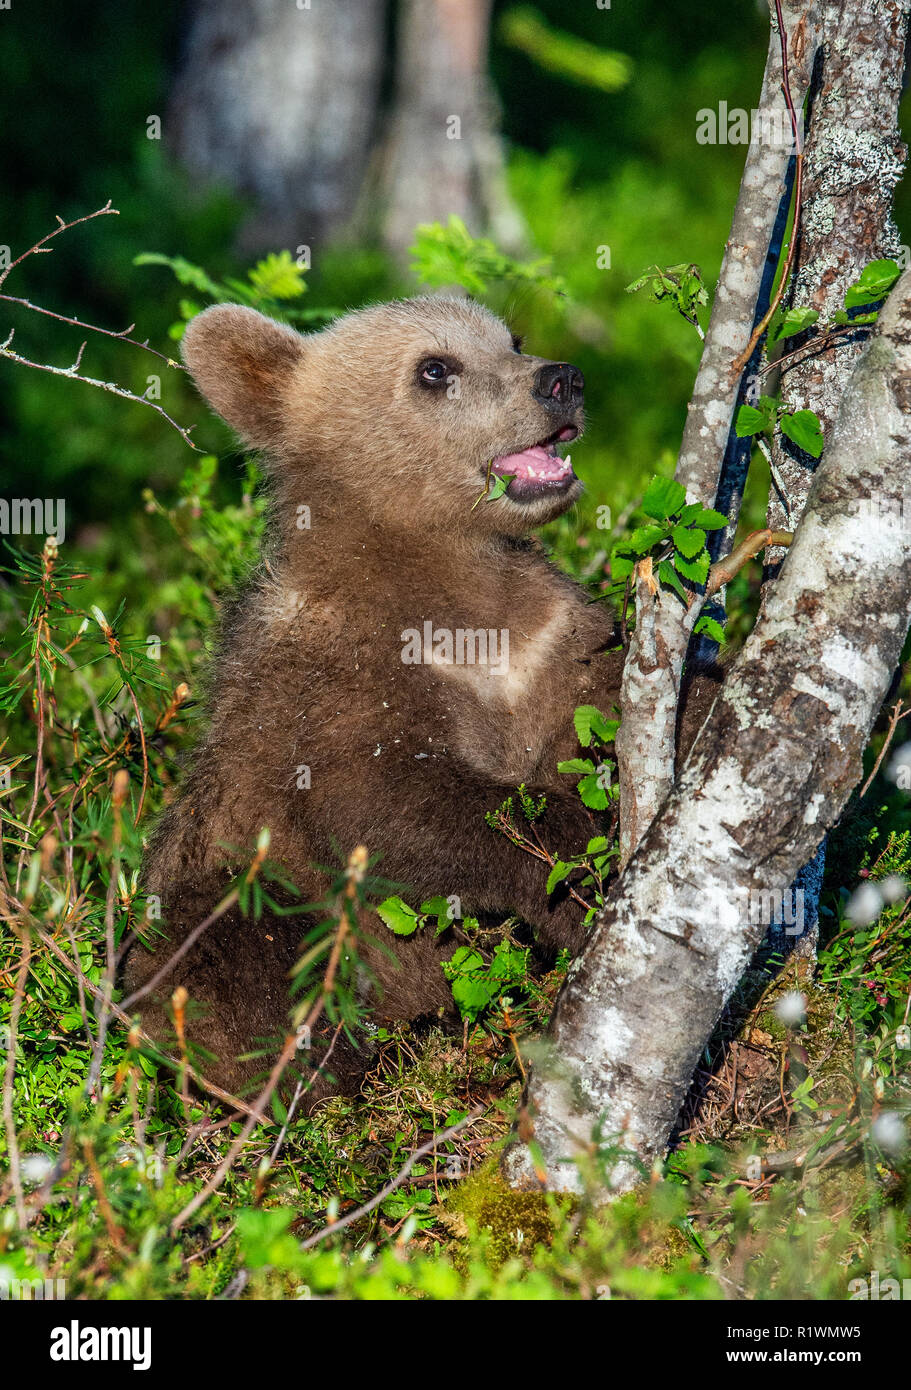 Brown bear Cub im Sommer Wald. Wissenschaftlicher Name: Ursus arctos. Natürlichen grünen Hintergrund. Natürlicher Lebensraum. Stockfoto